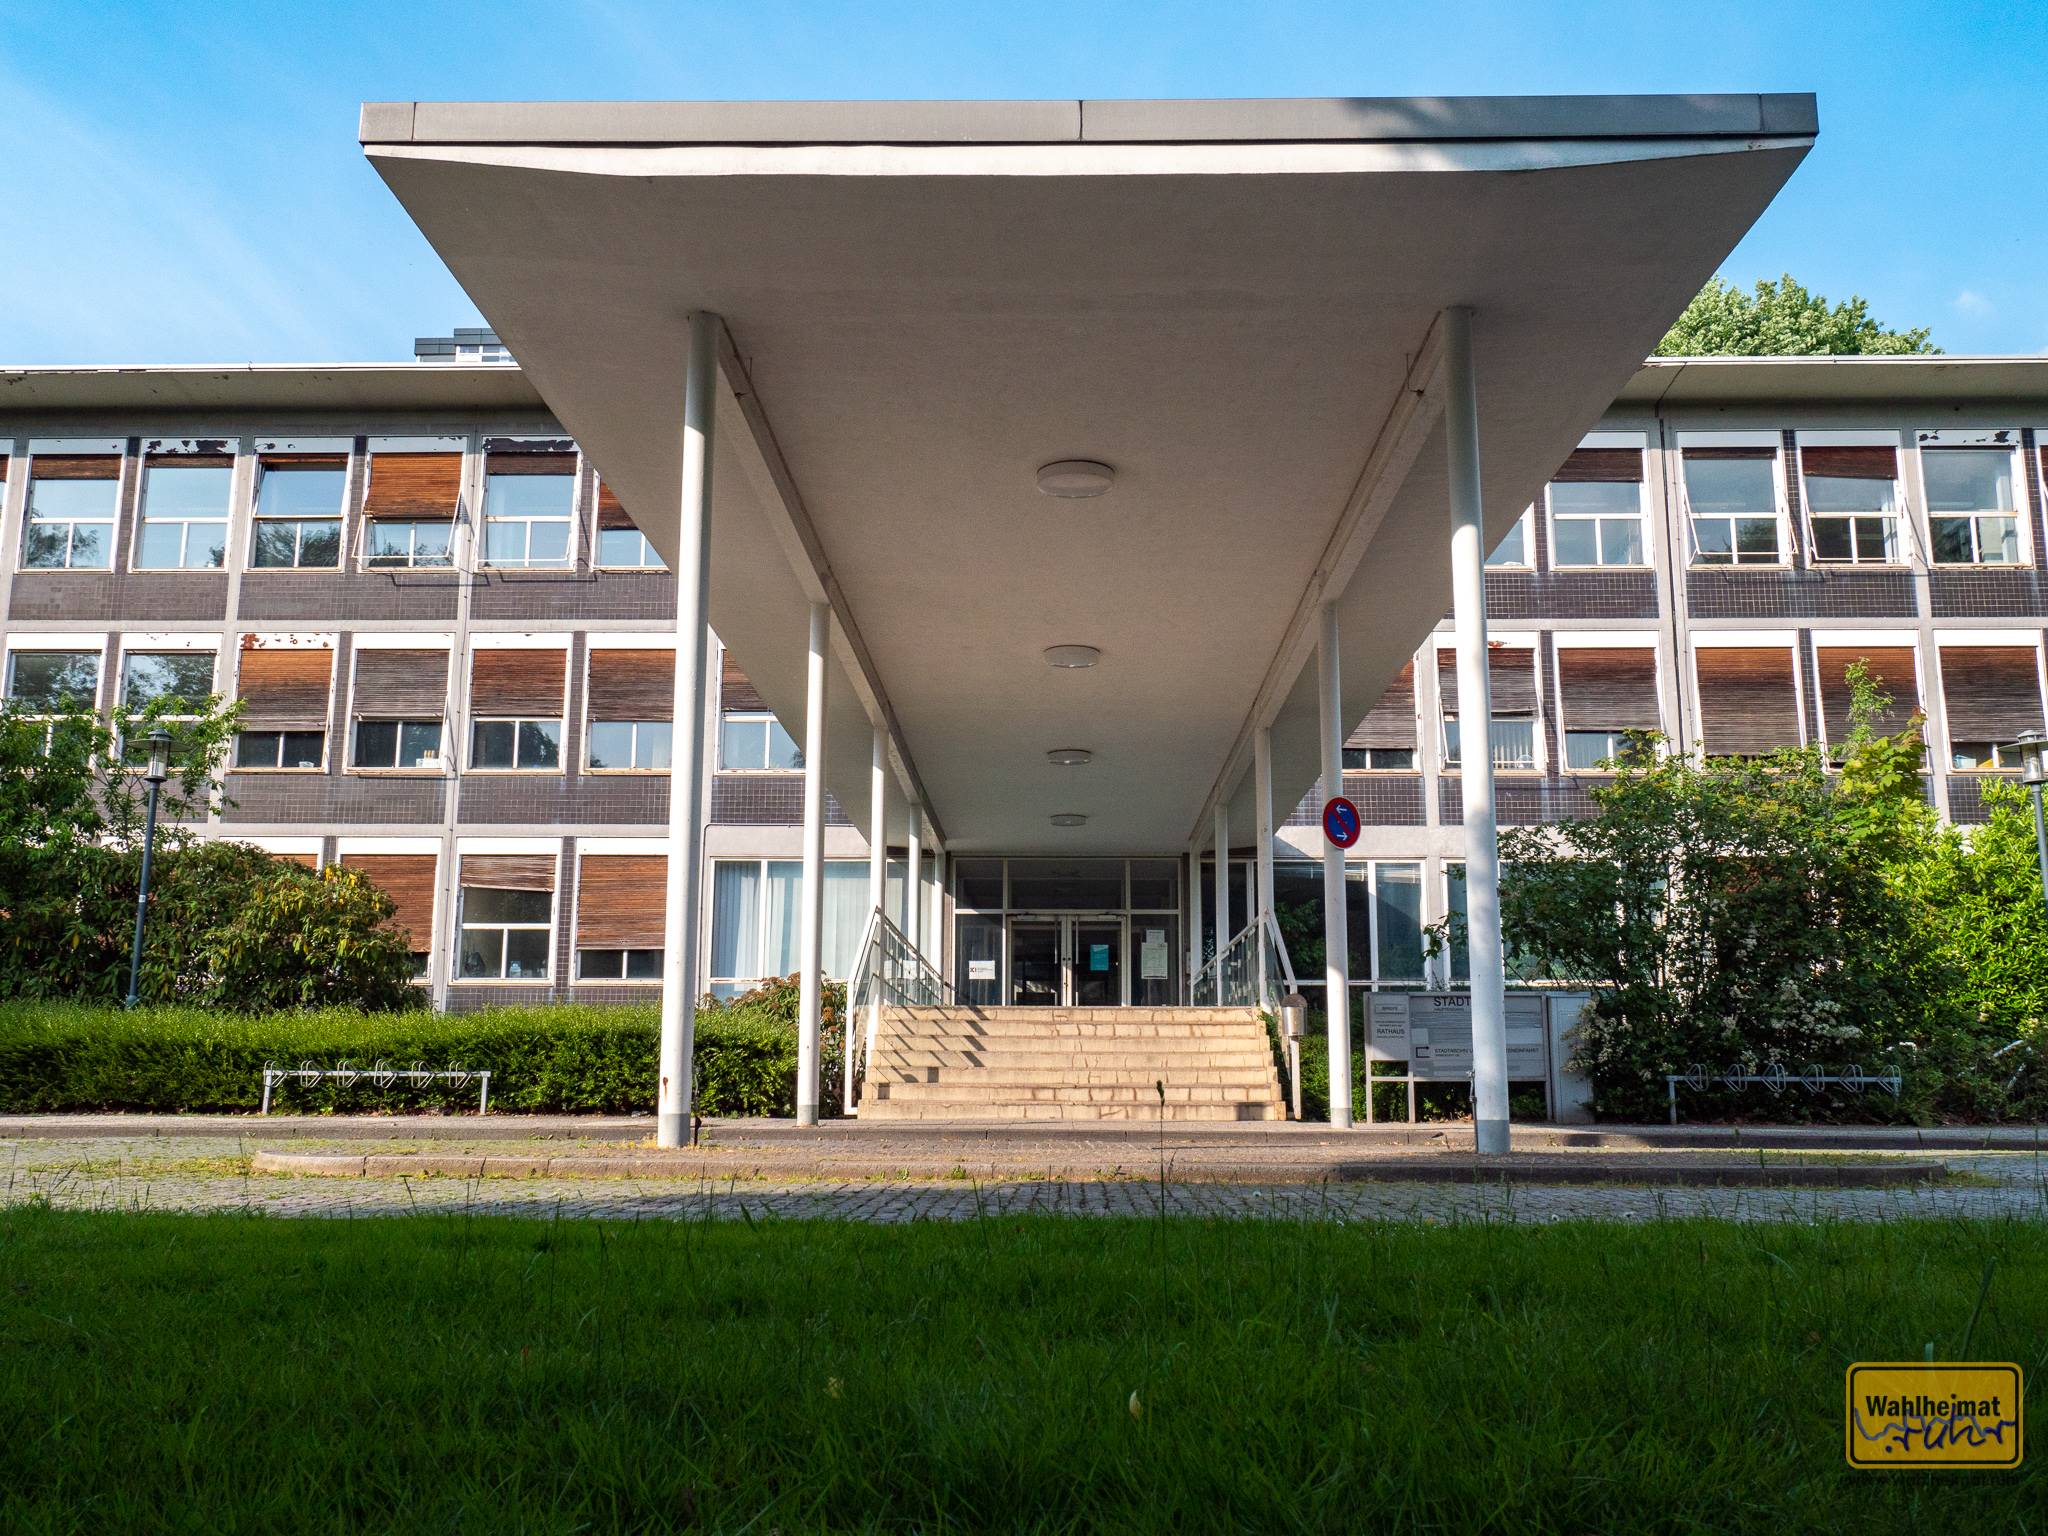 Das Stadthaus Krefeld gehörte ebenfalls zur Verseidag. Egon Eiermann entwarf den markanten Bau, der auf Bauhaus-Ideen fusste und 1956 fertiggestellt wurde und mittlerweile dringend einer Sanierung bedarf.